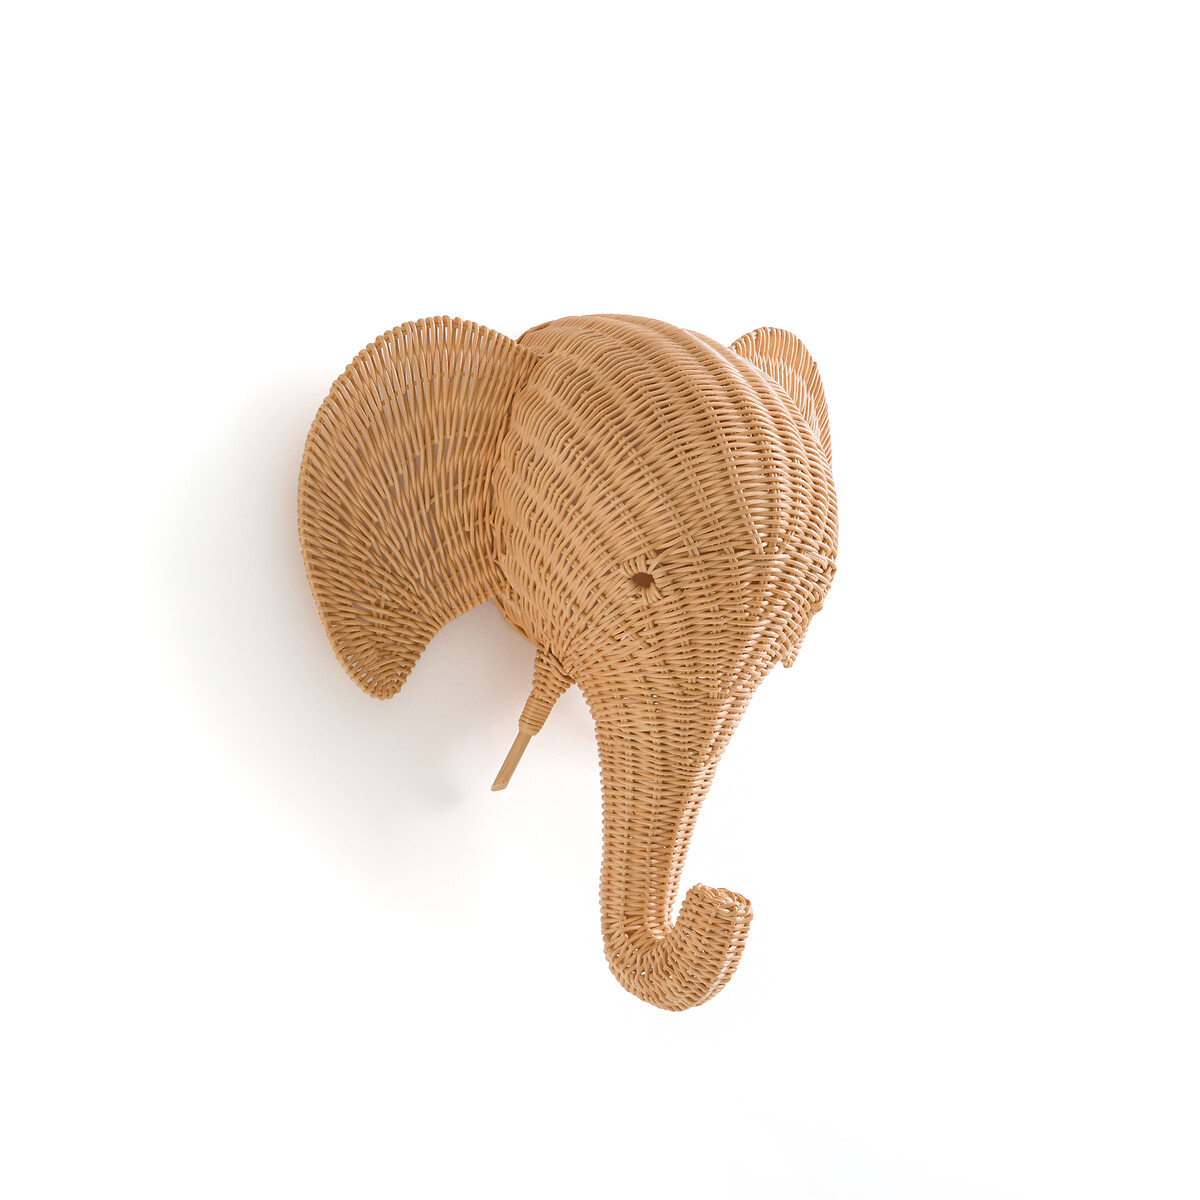 Украшение настенное в виде головы слона из ротанга Jeanne единый размер бежевый украшение настенное в виде веера из бамбука 50x50 moya единый размер бежевый